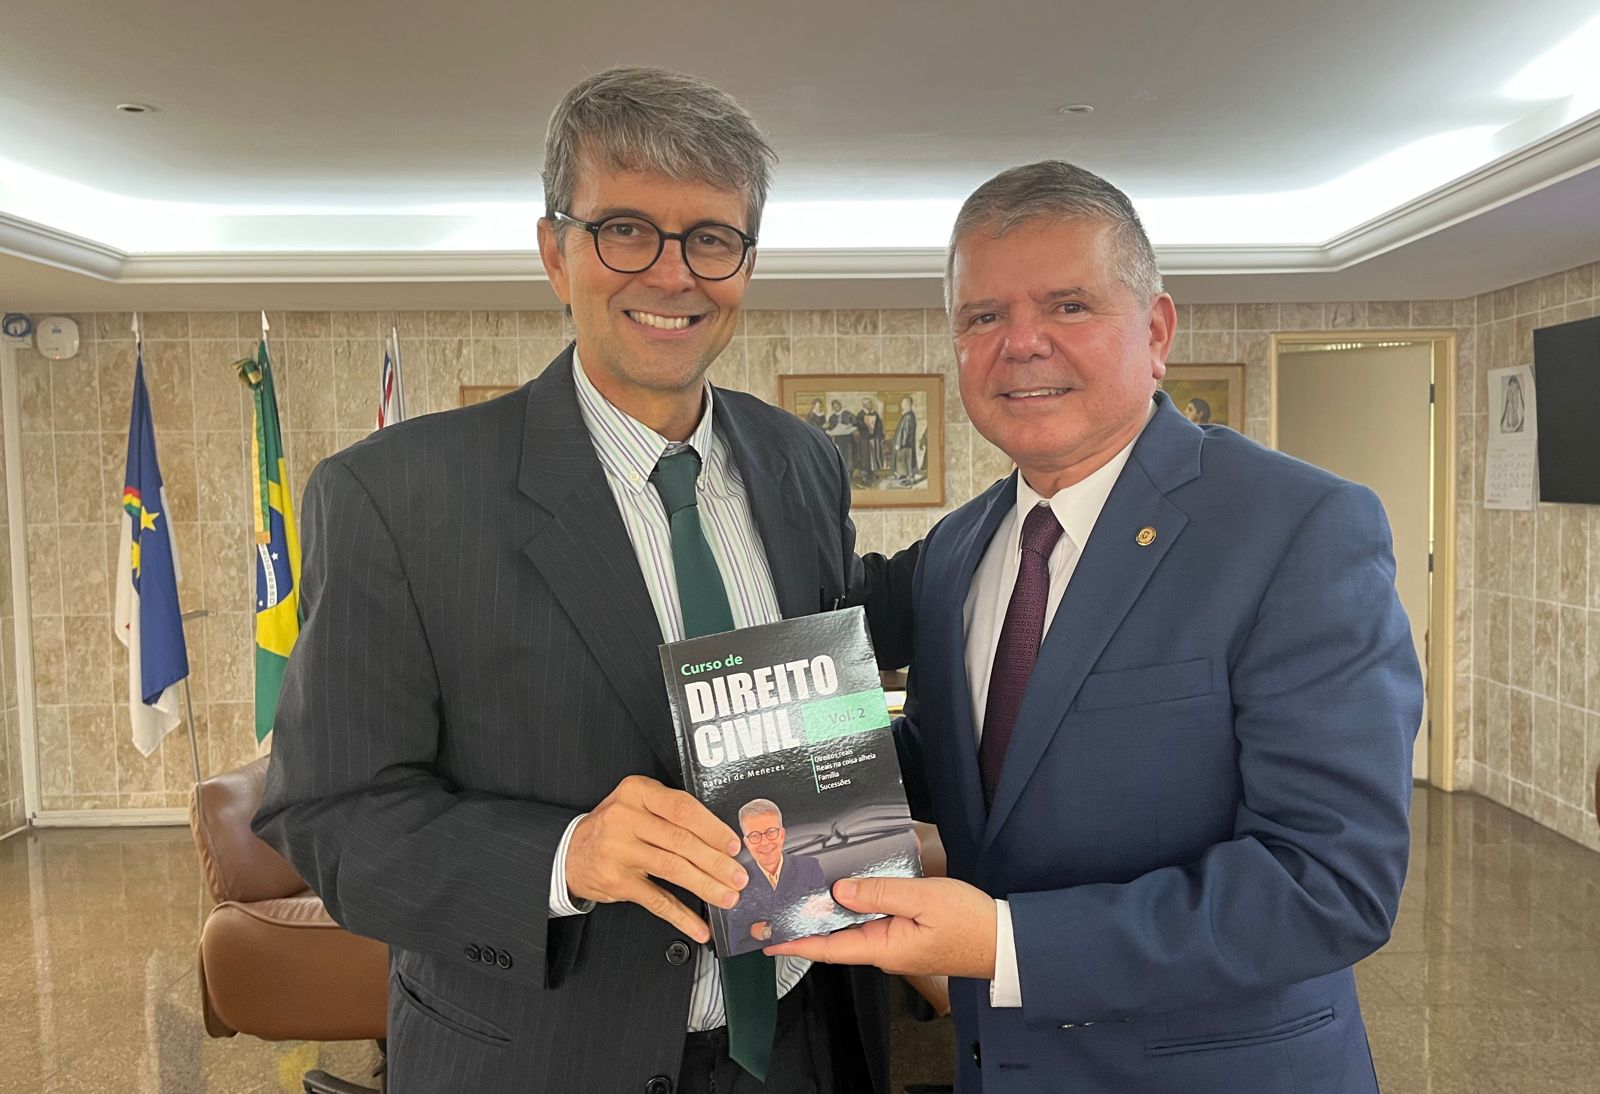 Corregedor ao lado do autor, juiz Rafael de Menezes, com o livro